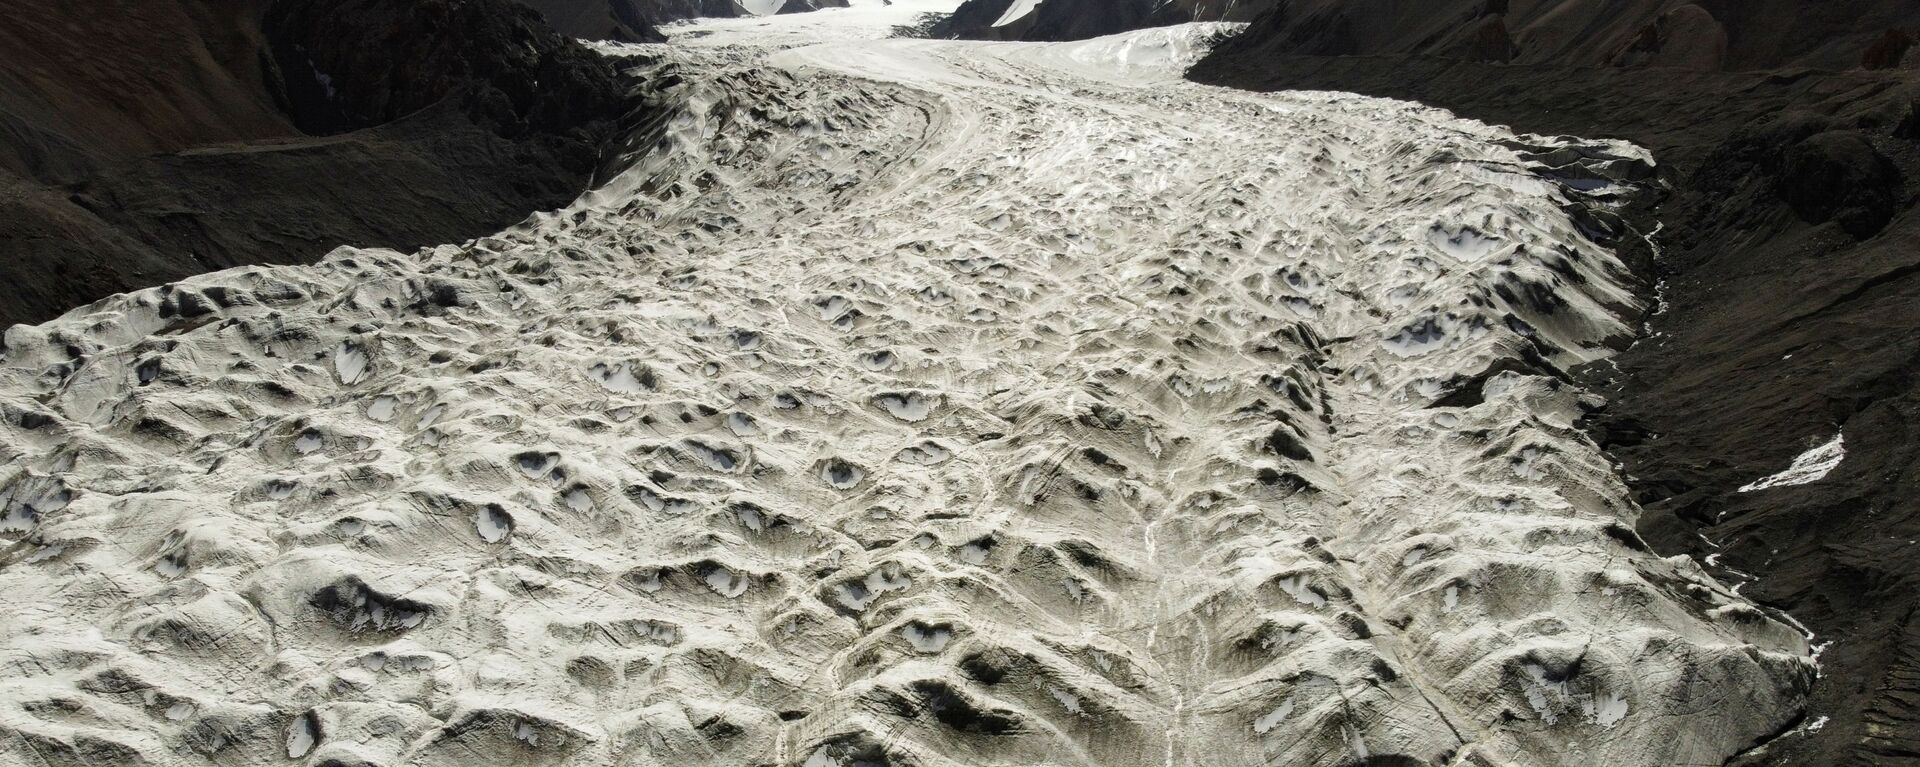 Потоки талой воды с ледника Лаохугоу № 12 в горах Цилянь в провинции Ганьсу, Китай - Sputnik Таджикистан, 1920, 15.05.2021